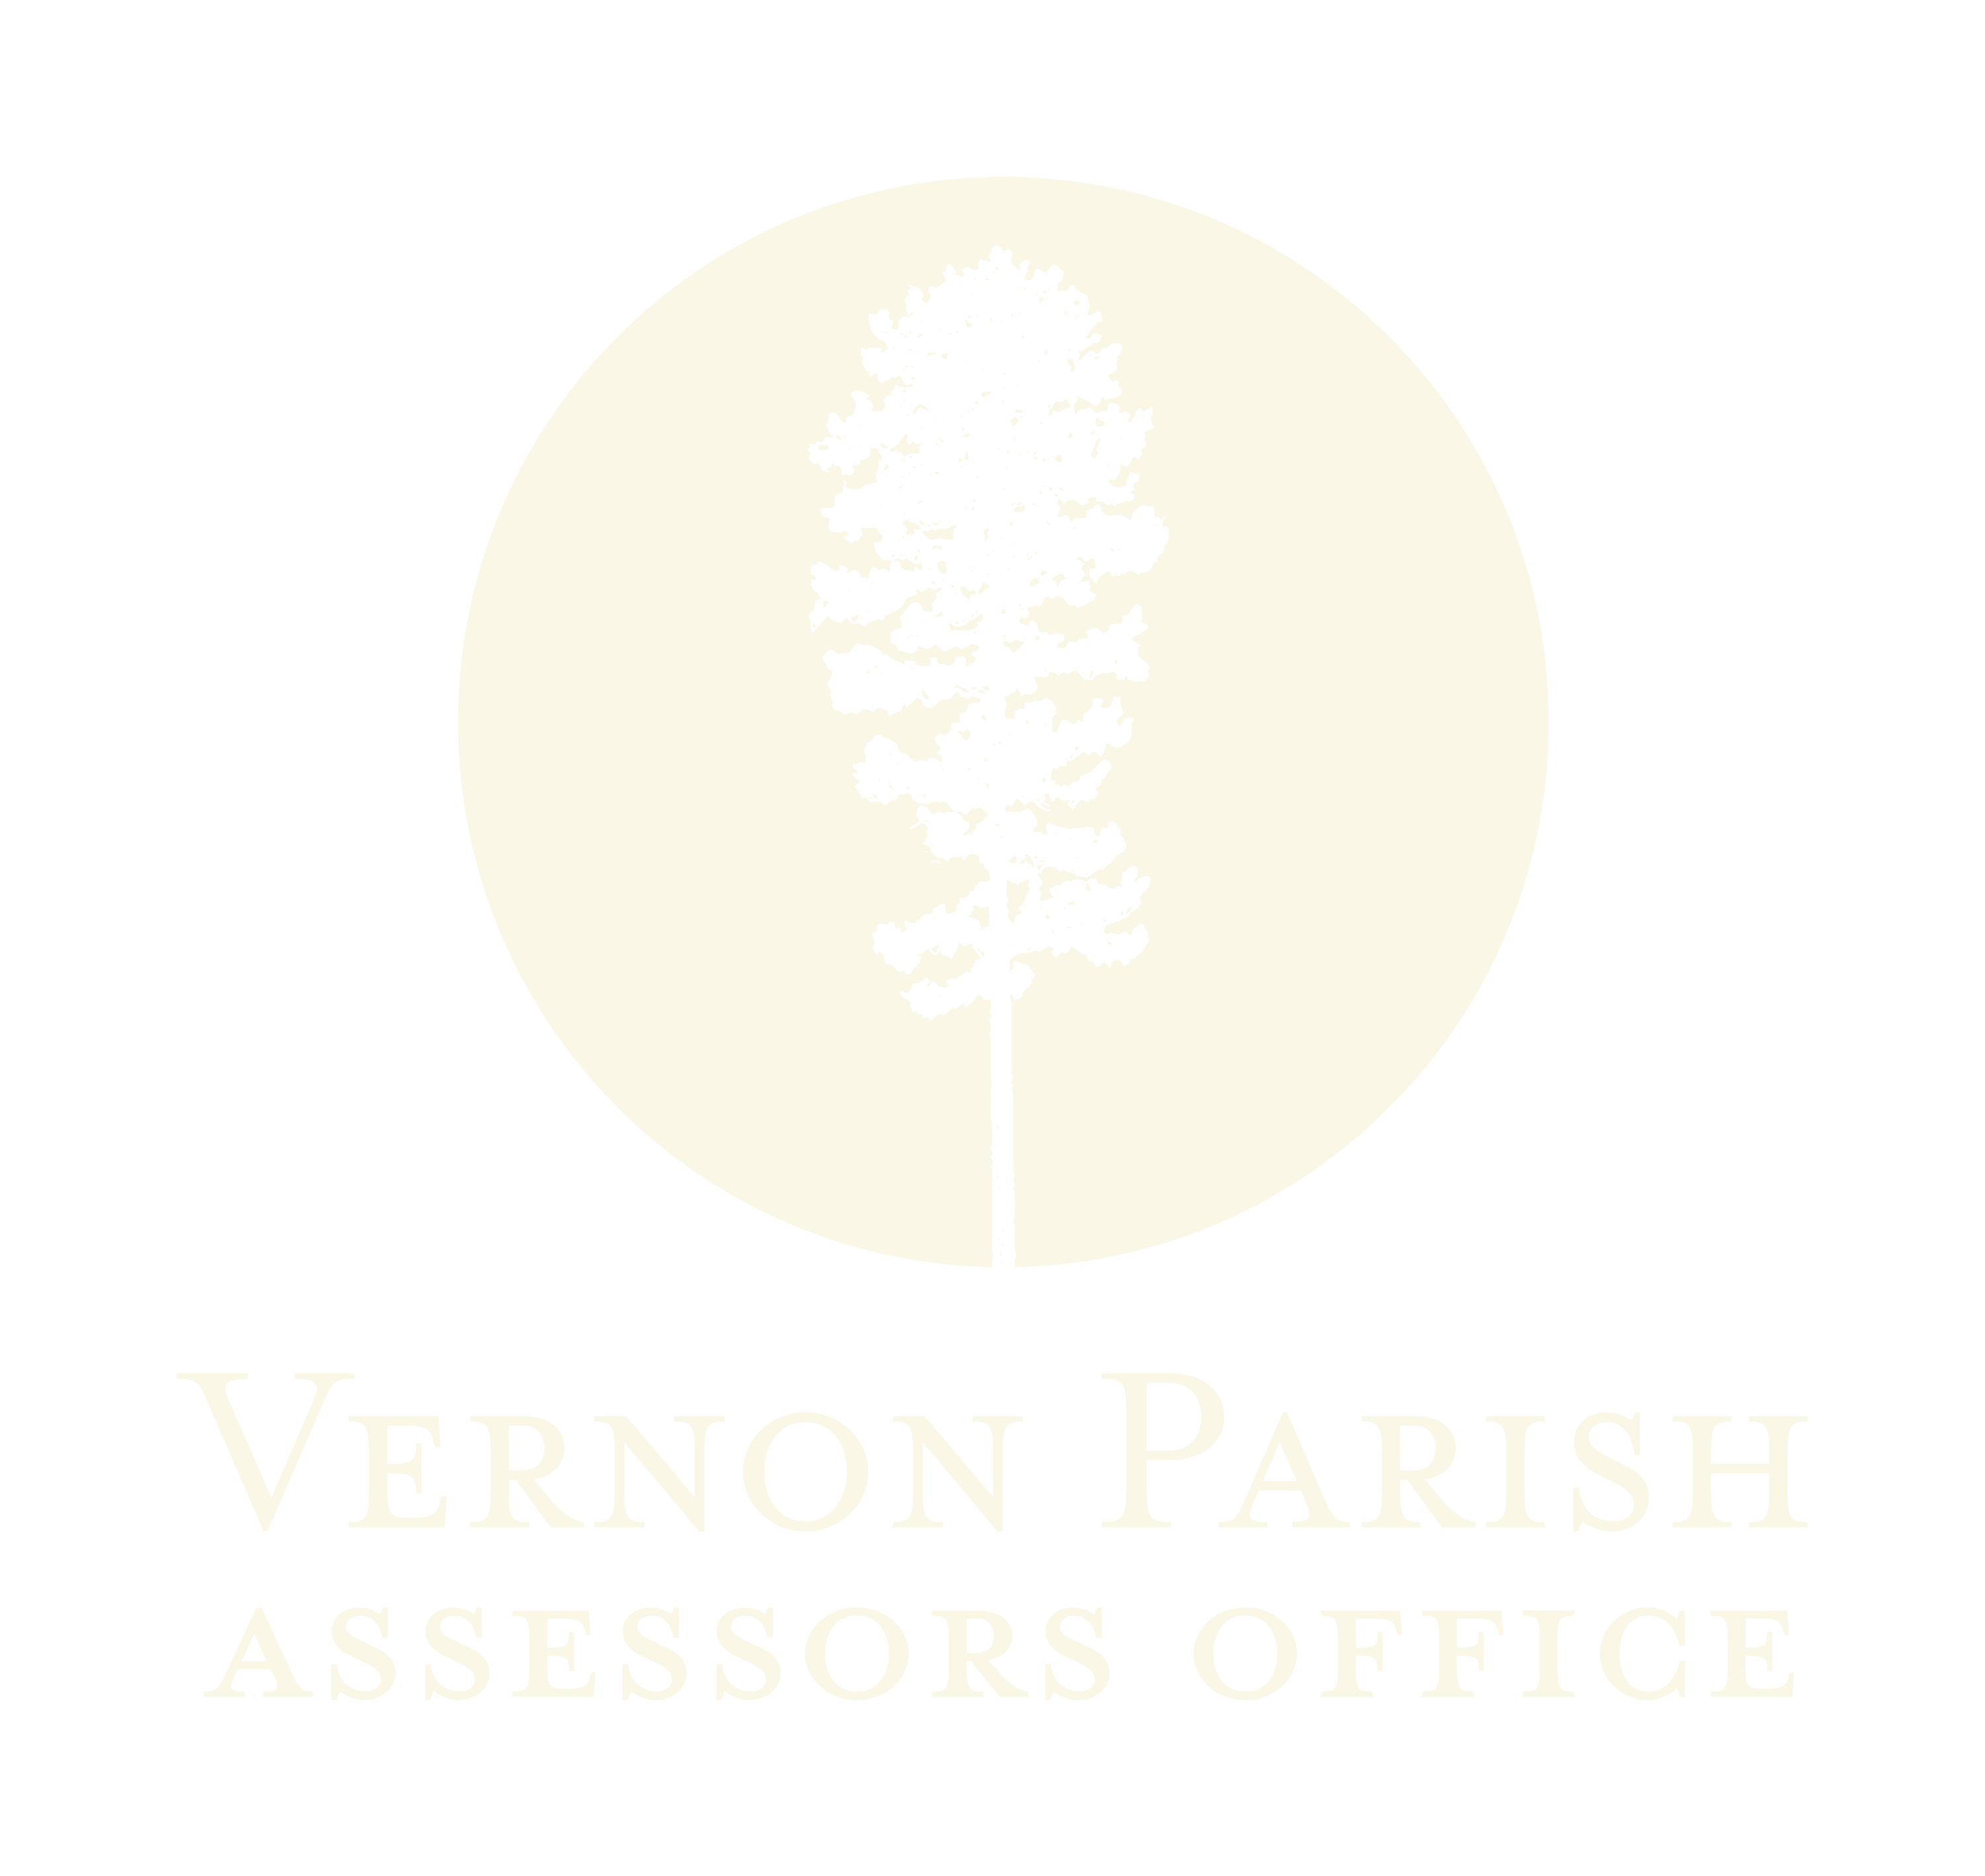 Vernon Parish Assessors Office logo